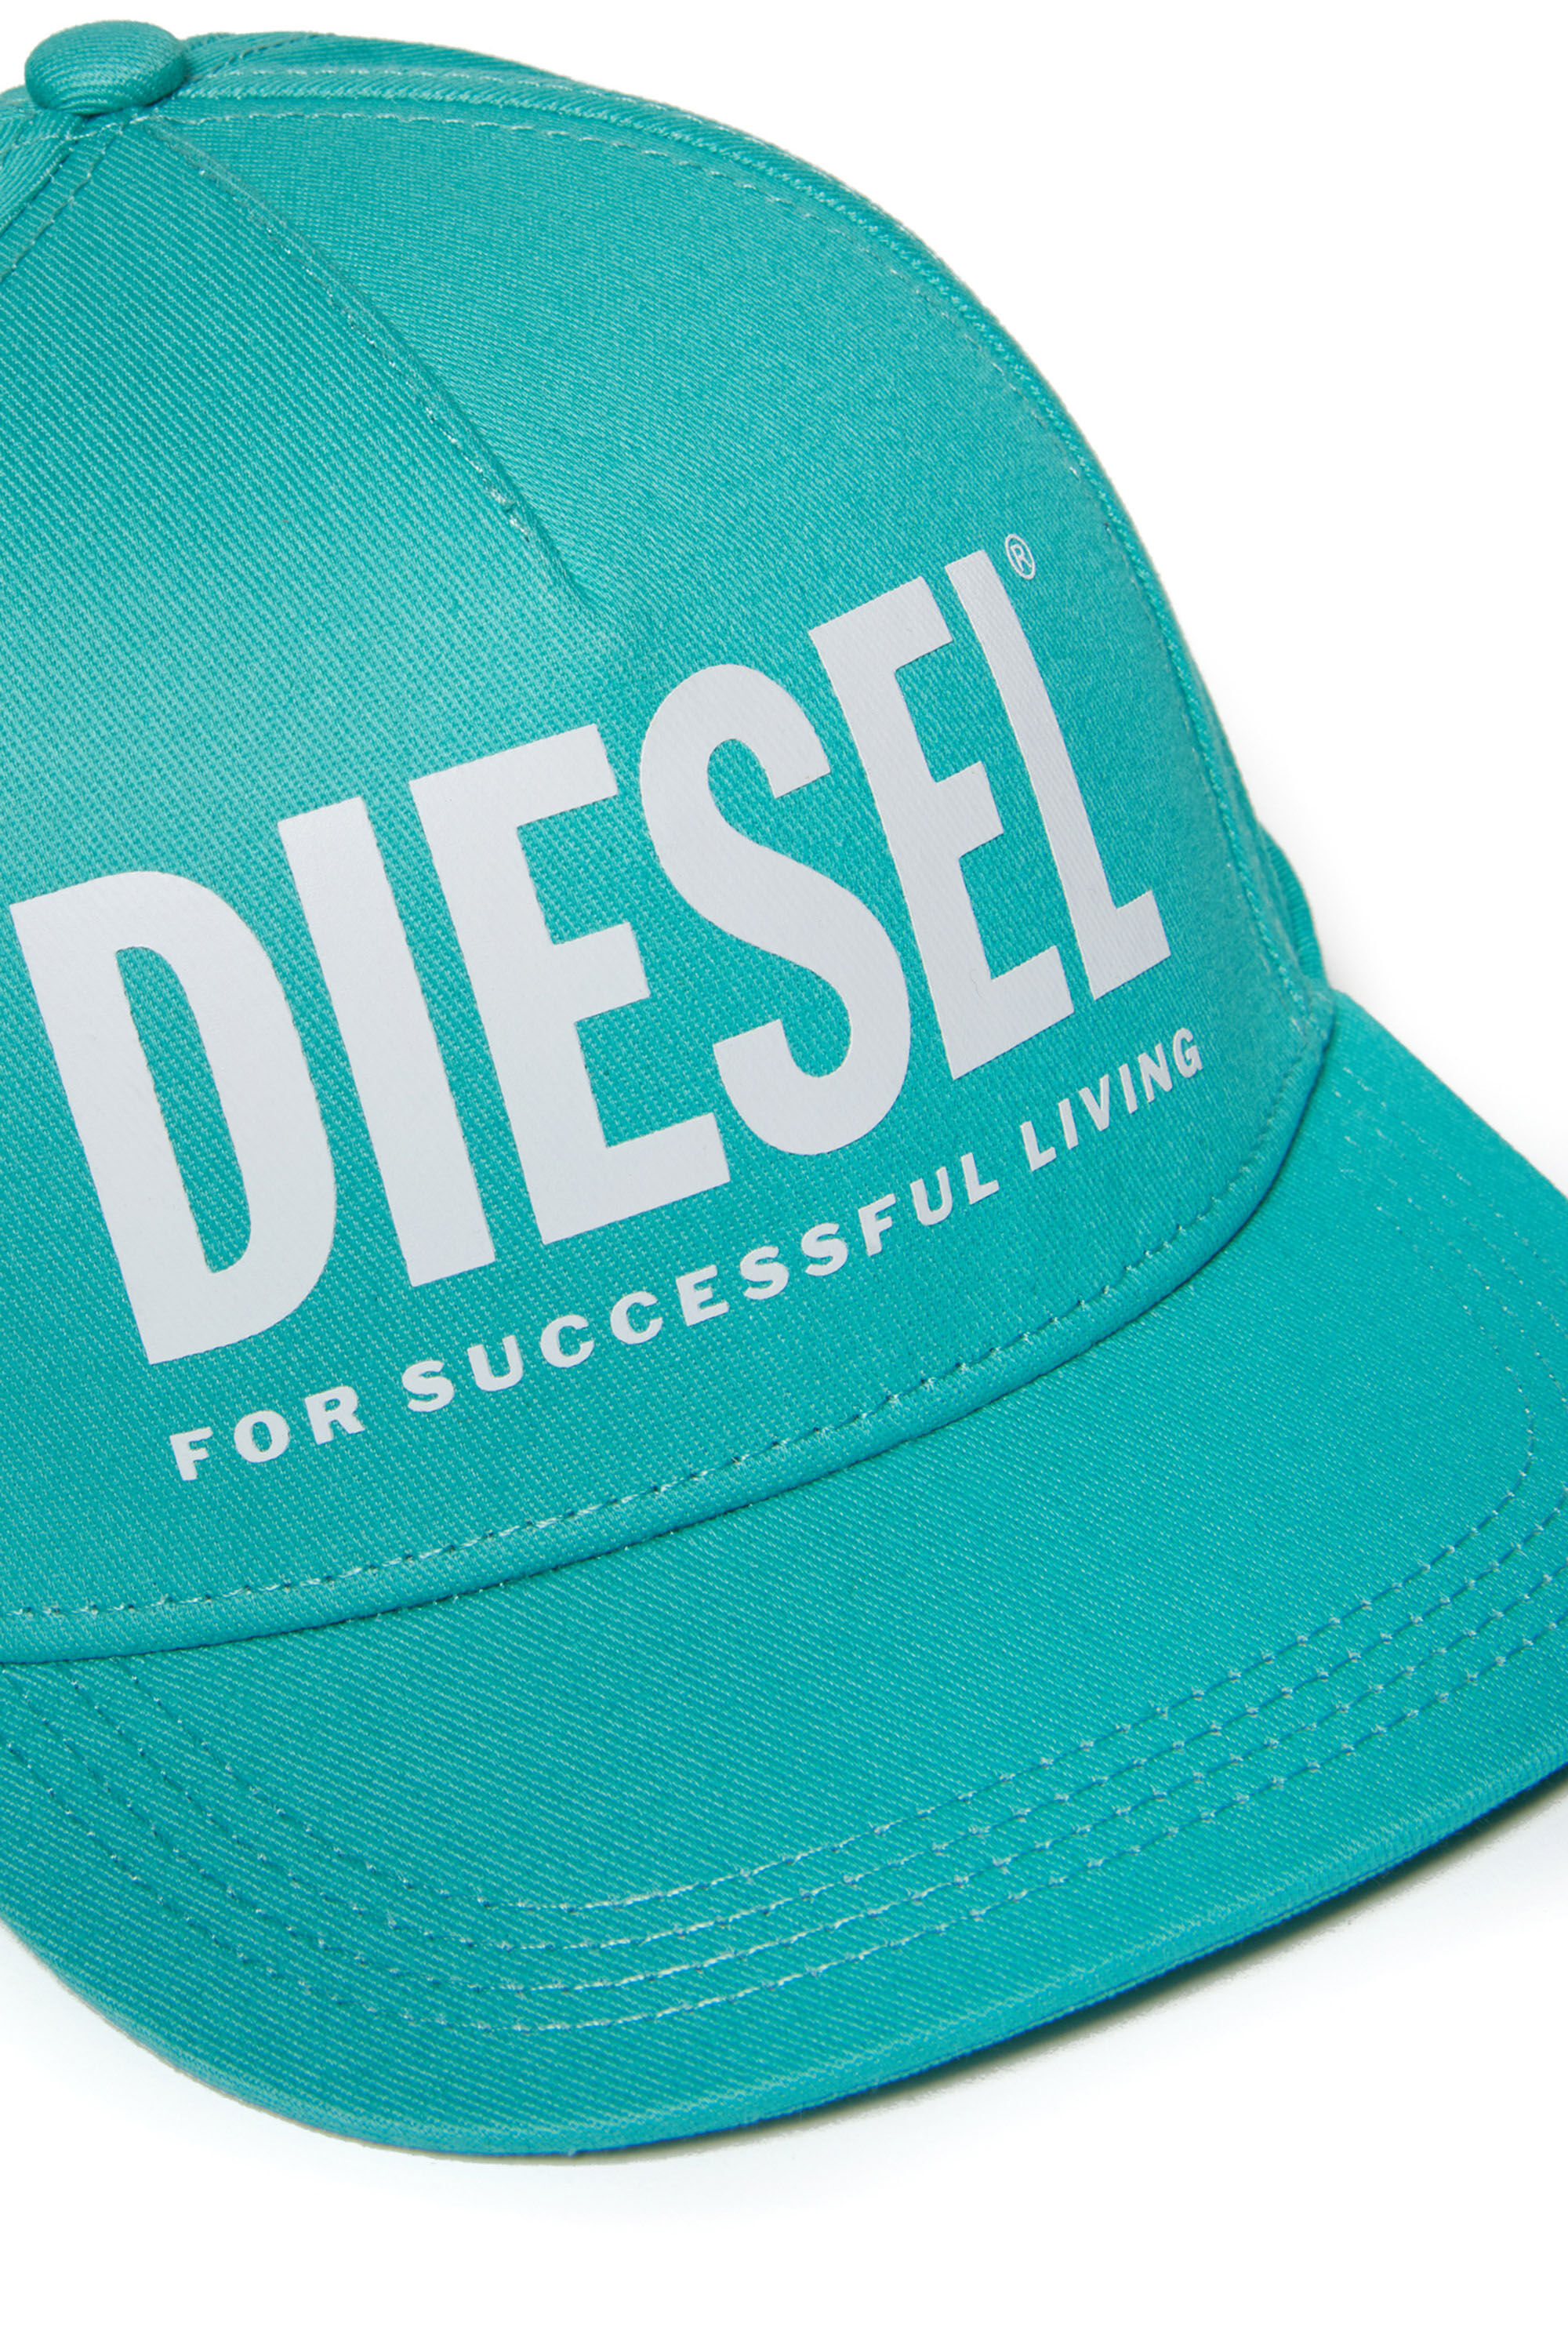 Diesel - FOLLY, Verde - Image 3